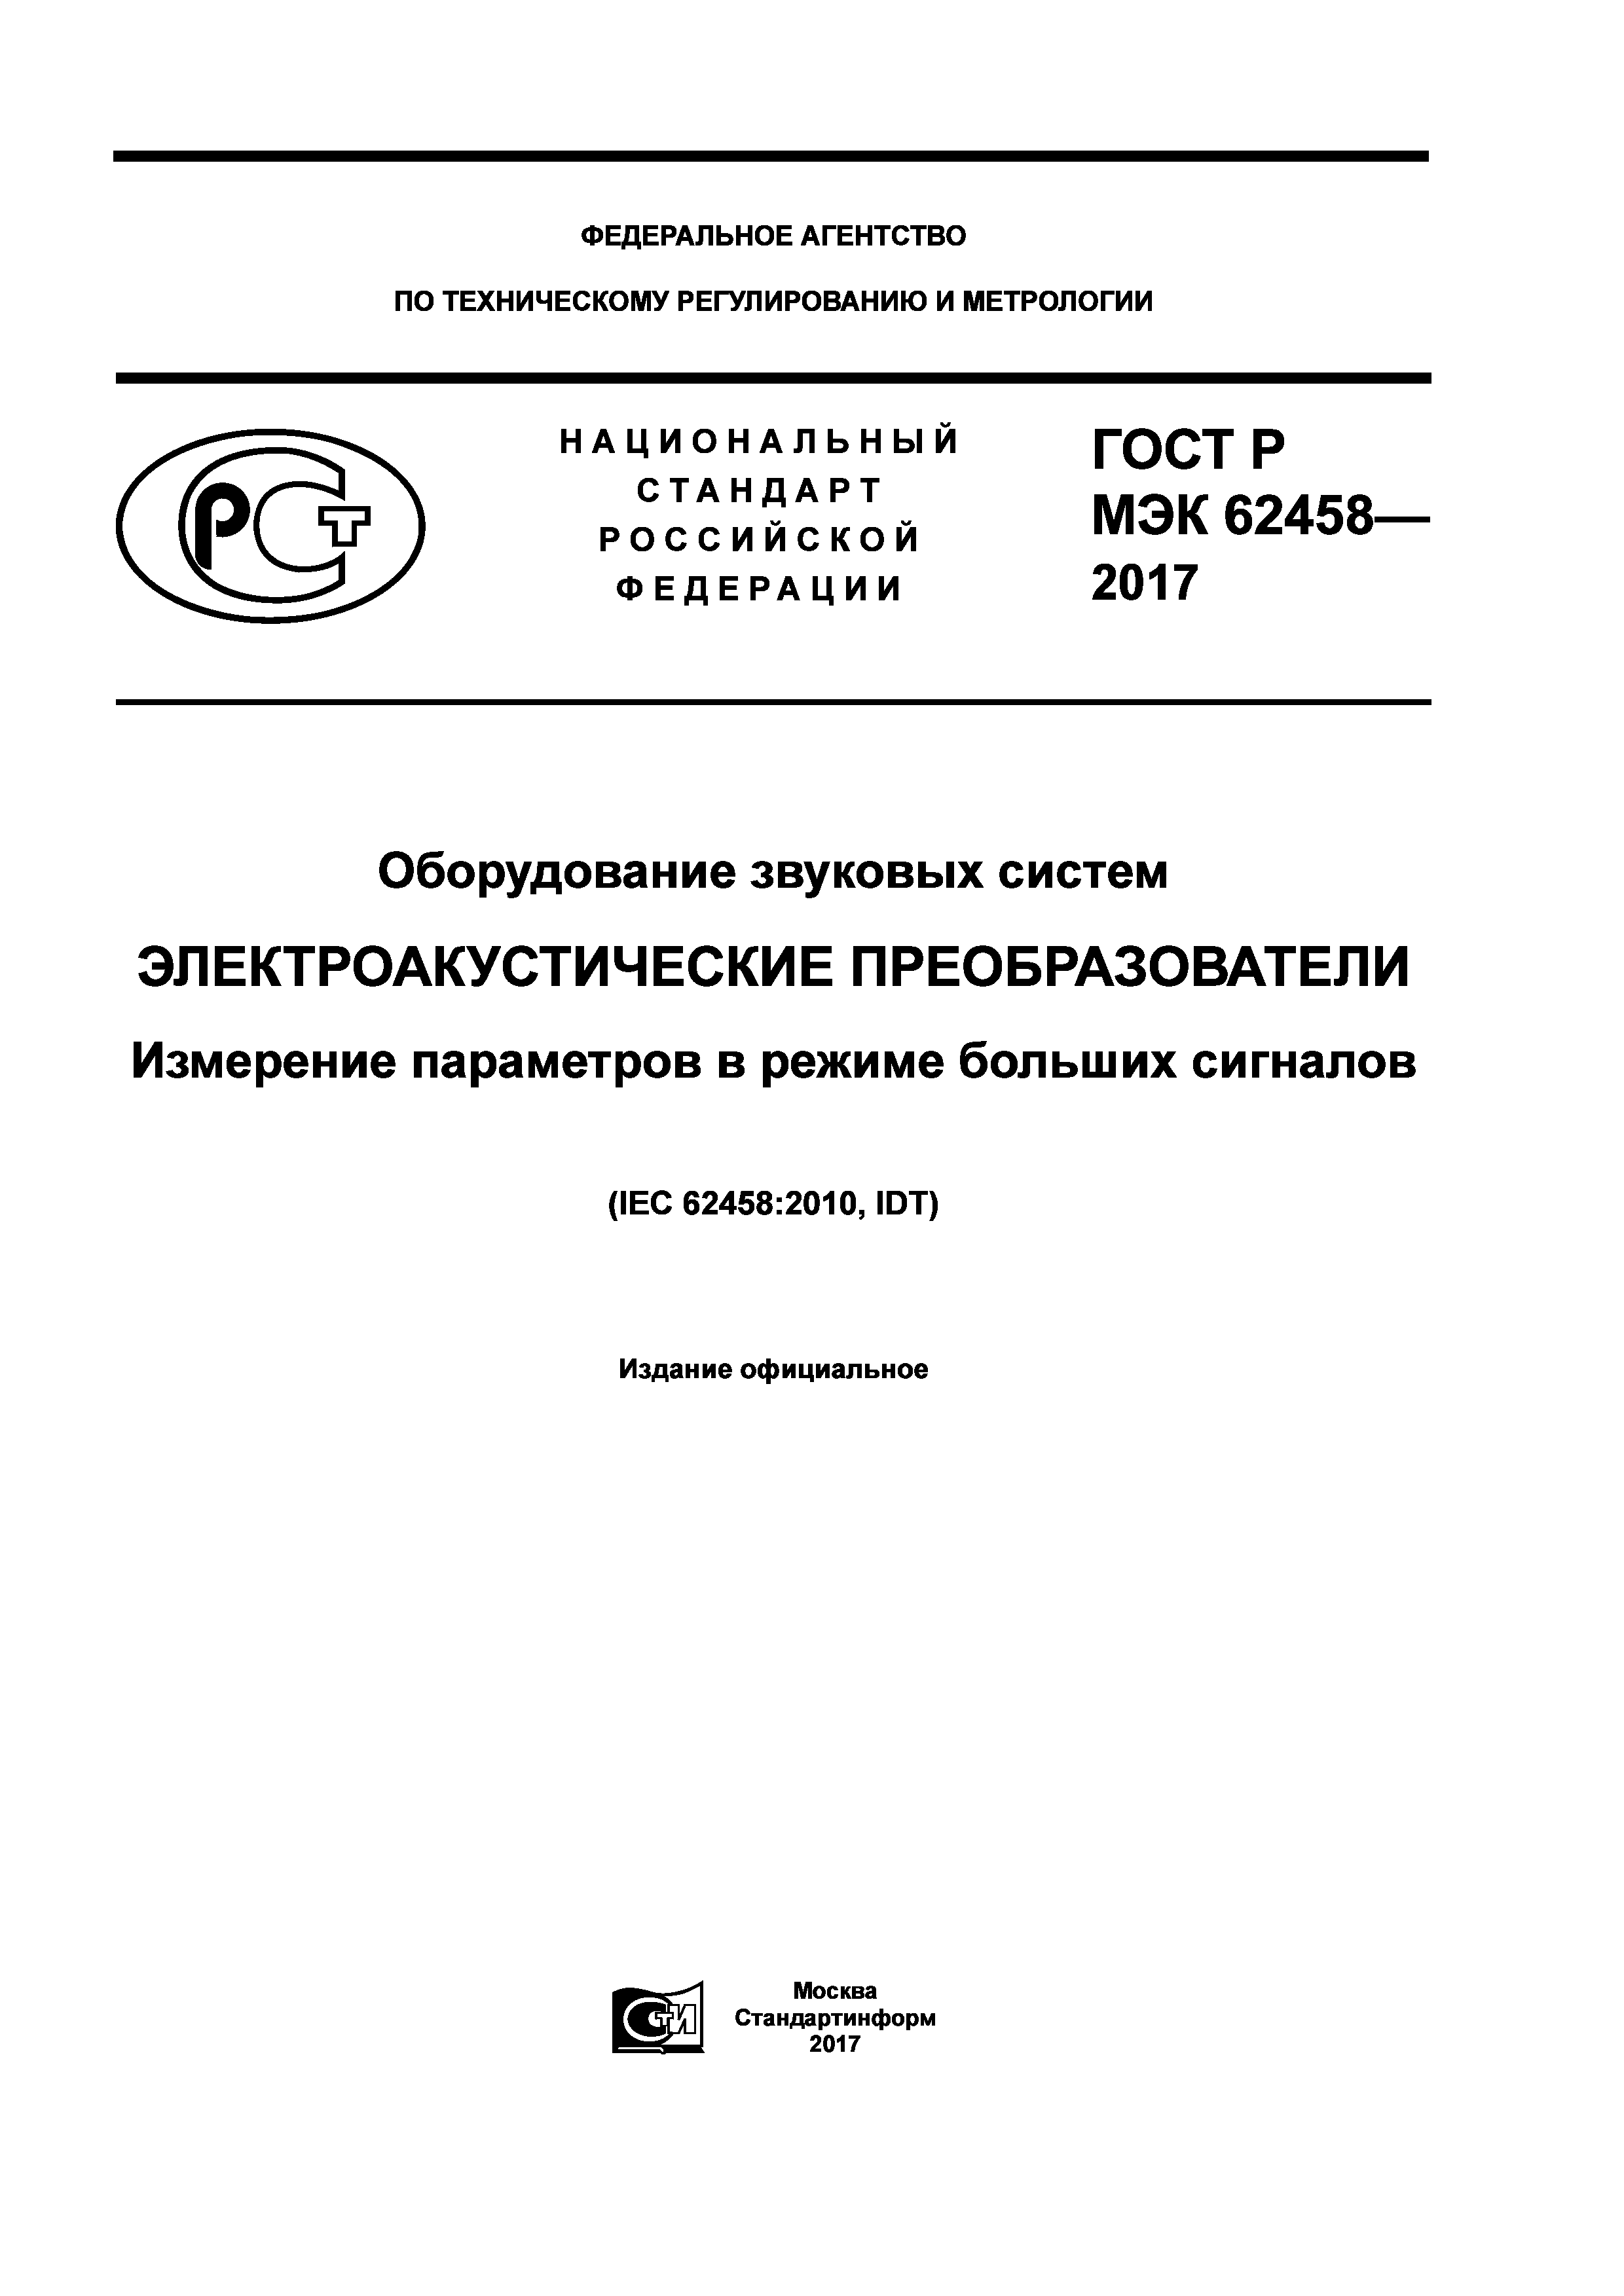 ГОСТ Р МЭК 62458-2017